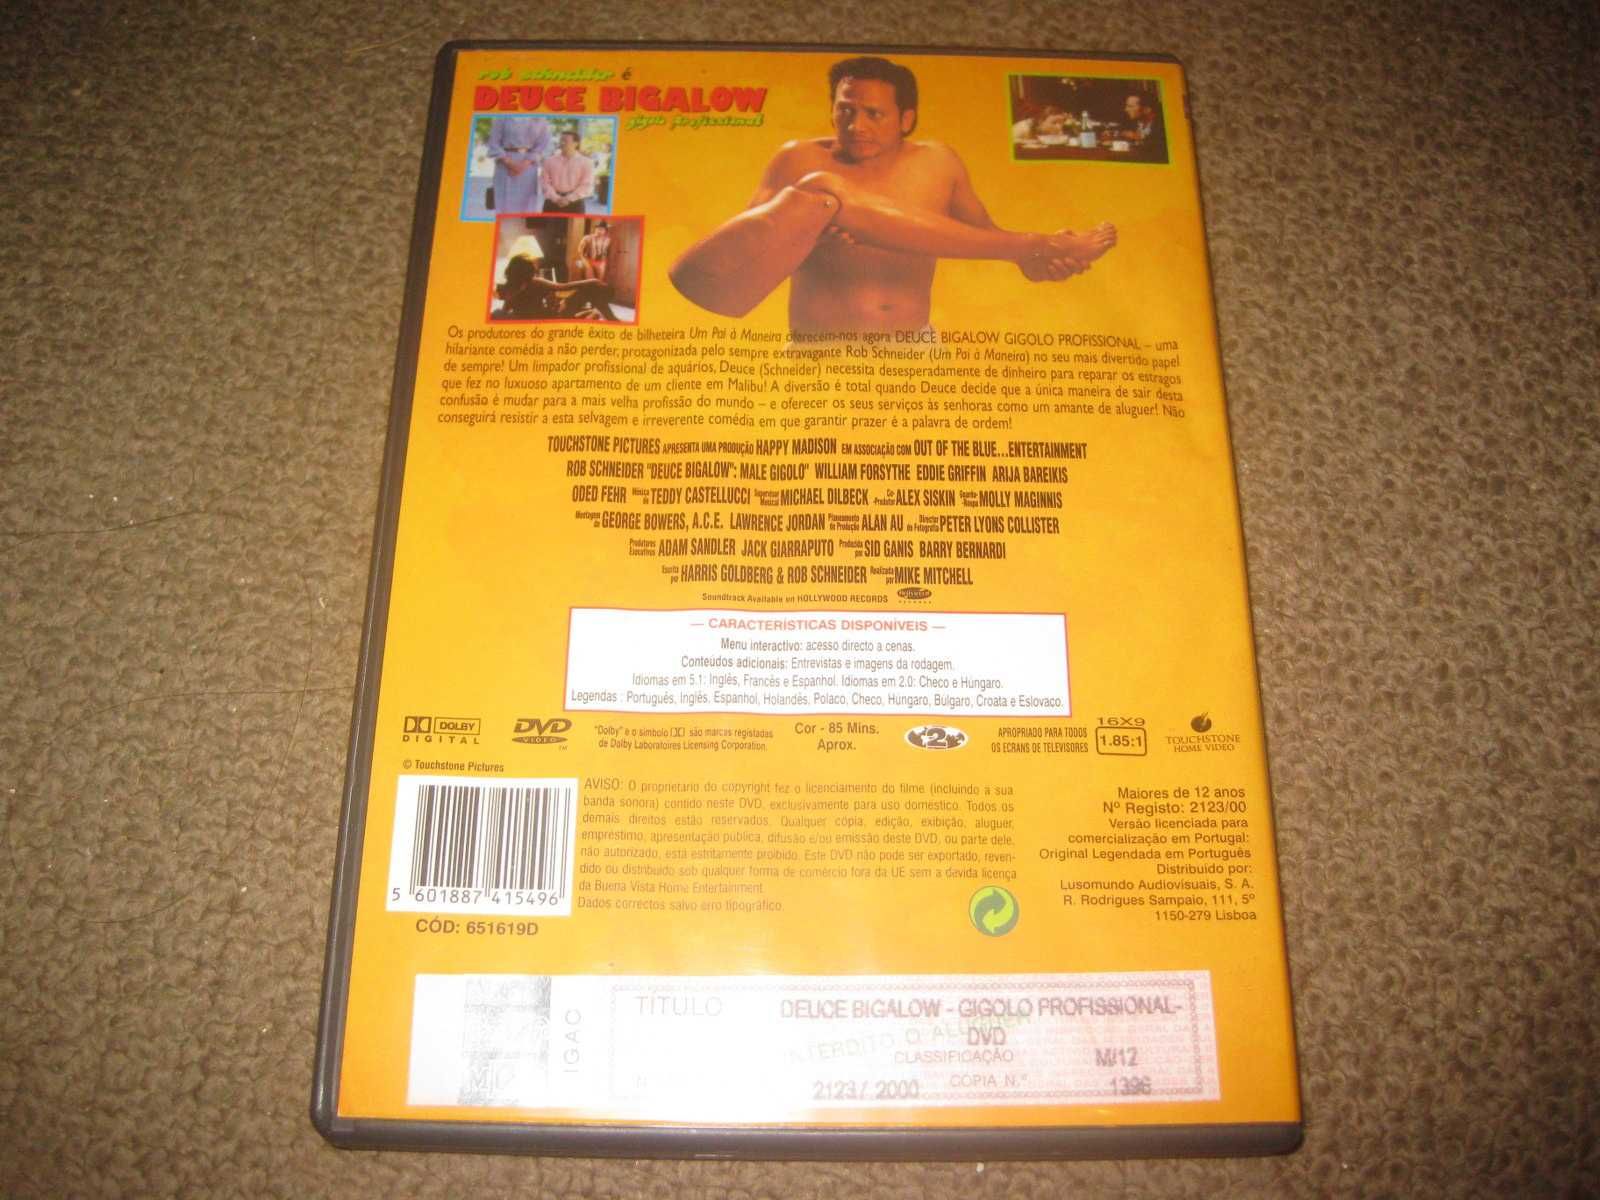 DVD "Deuce Bigalow: Gigolo Profissional" com Rob Schneider